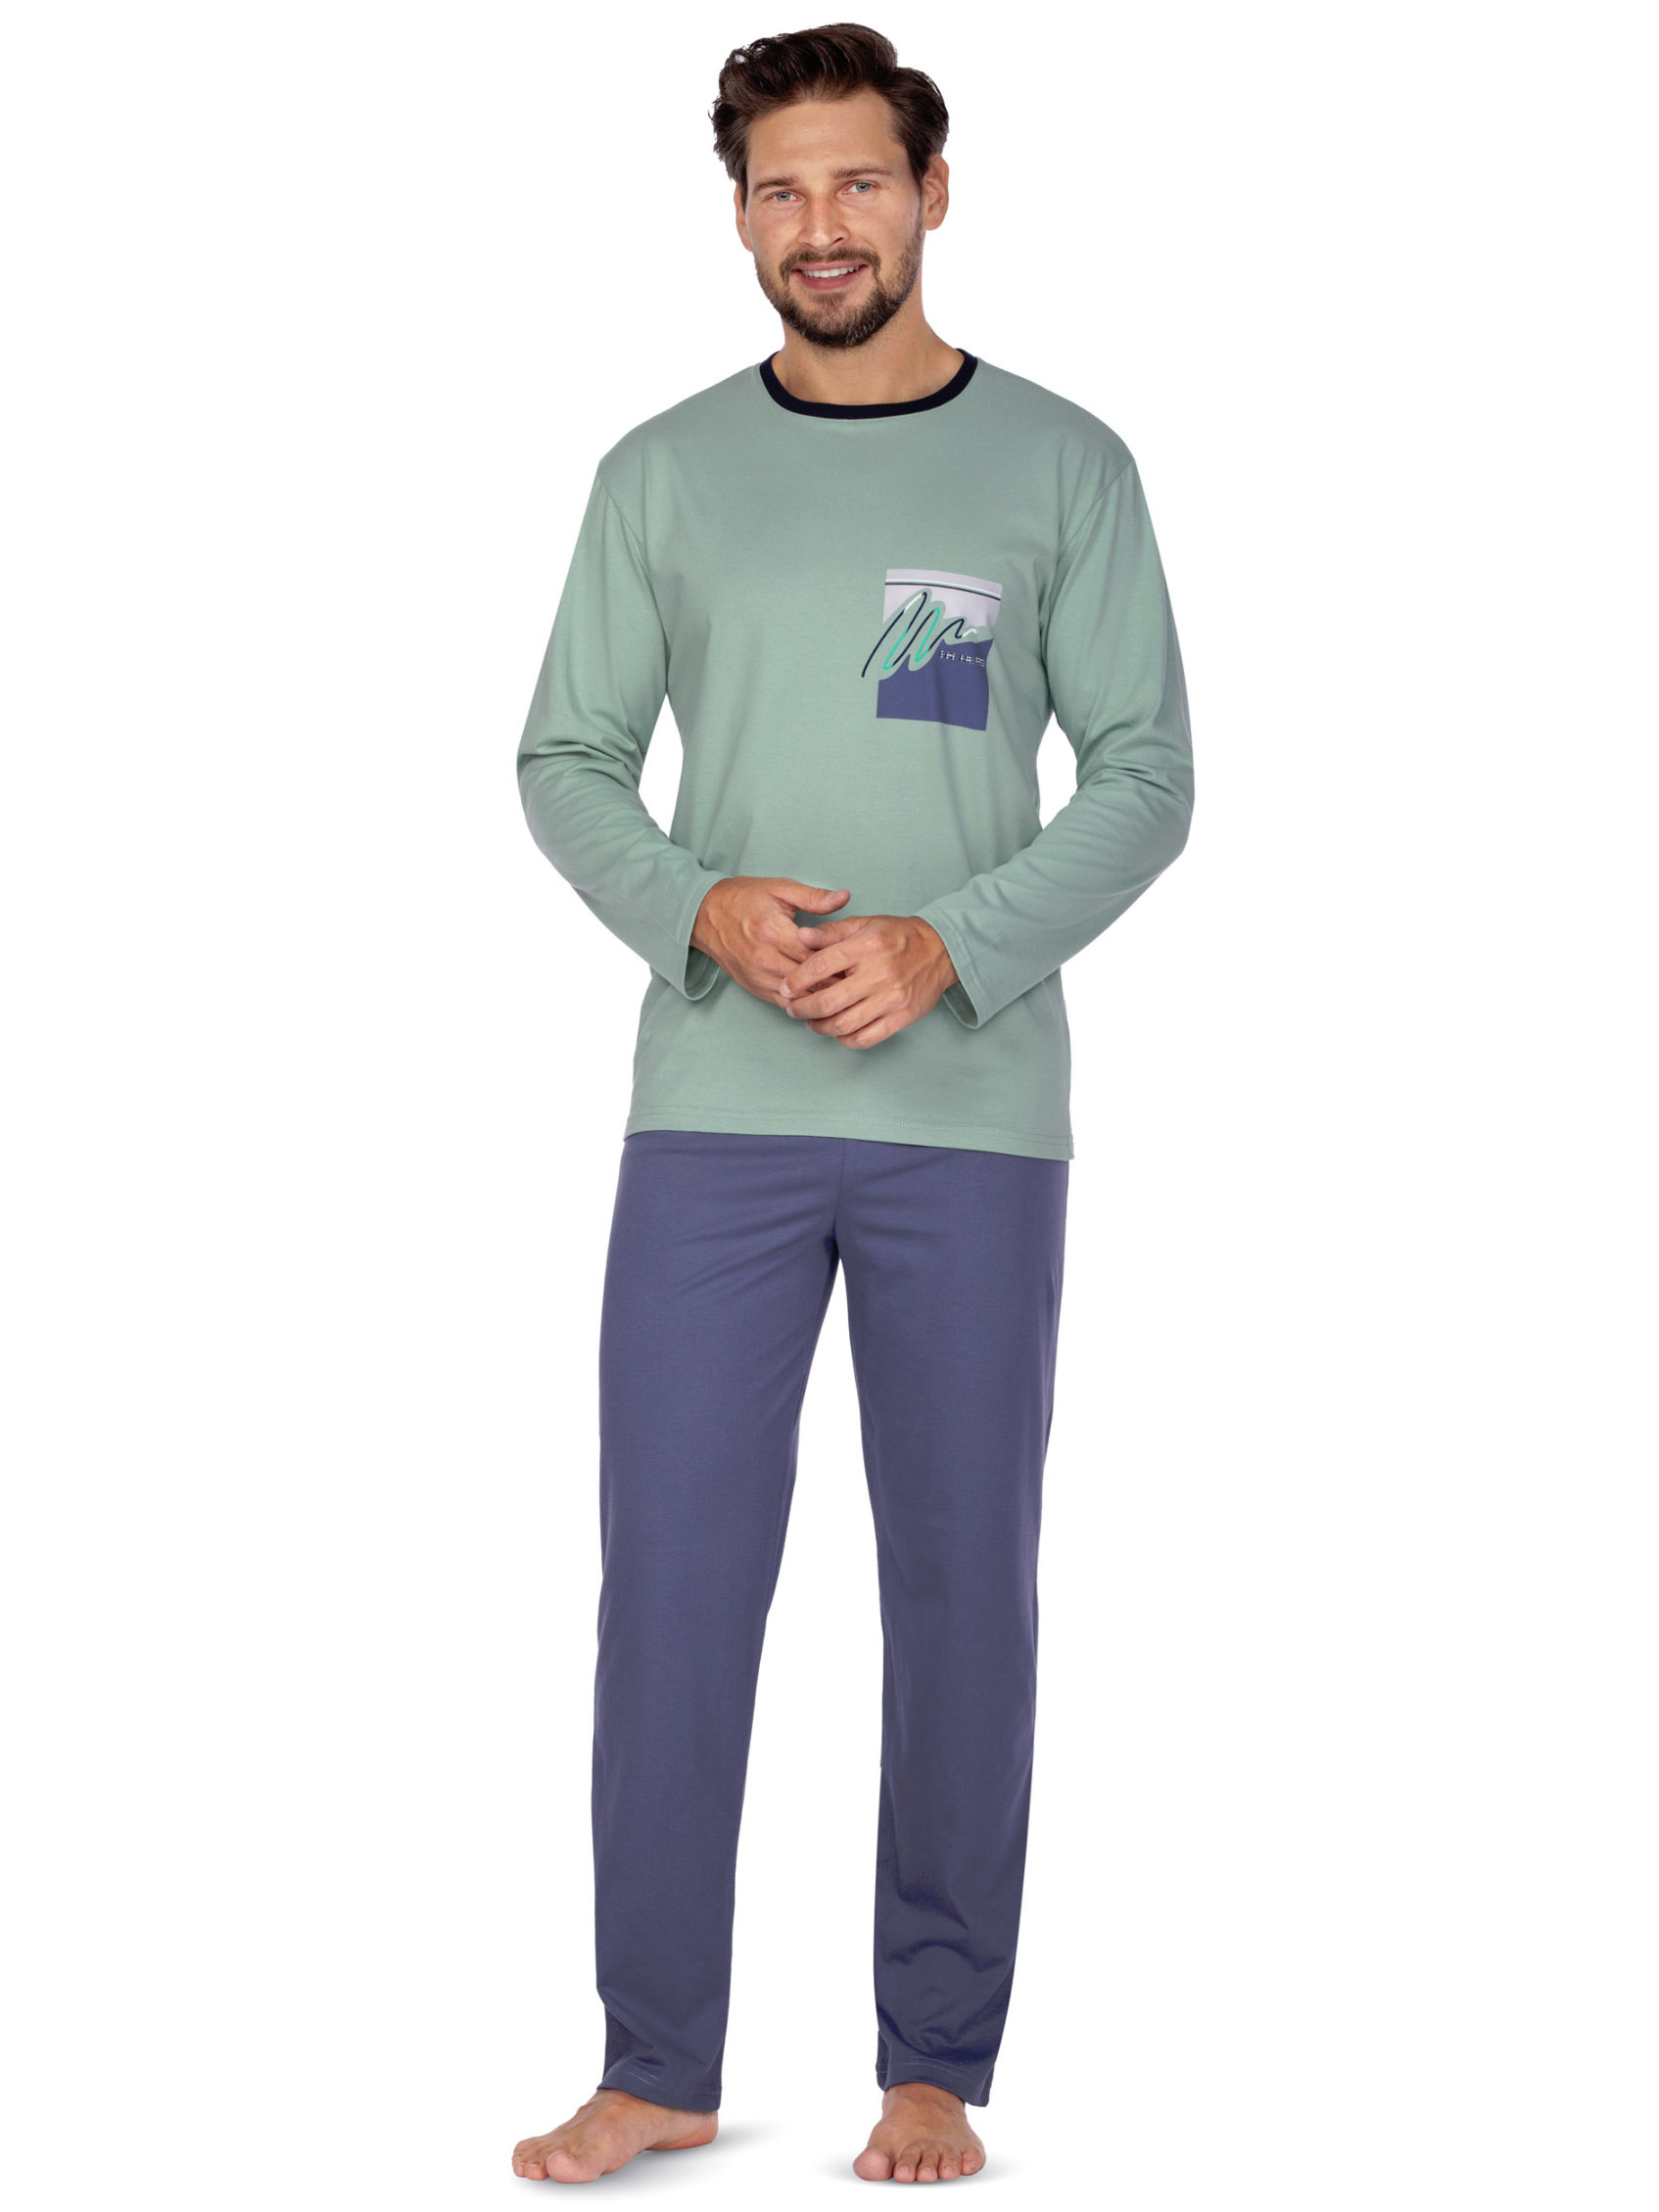 Мужская хлопковая двухцветная пижама / домашний комплект больших размеров: кофта с принтом и длинные штаны Regina 453 Big #2